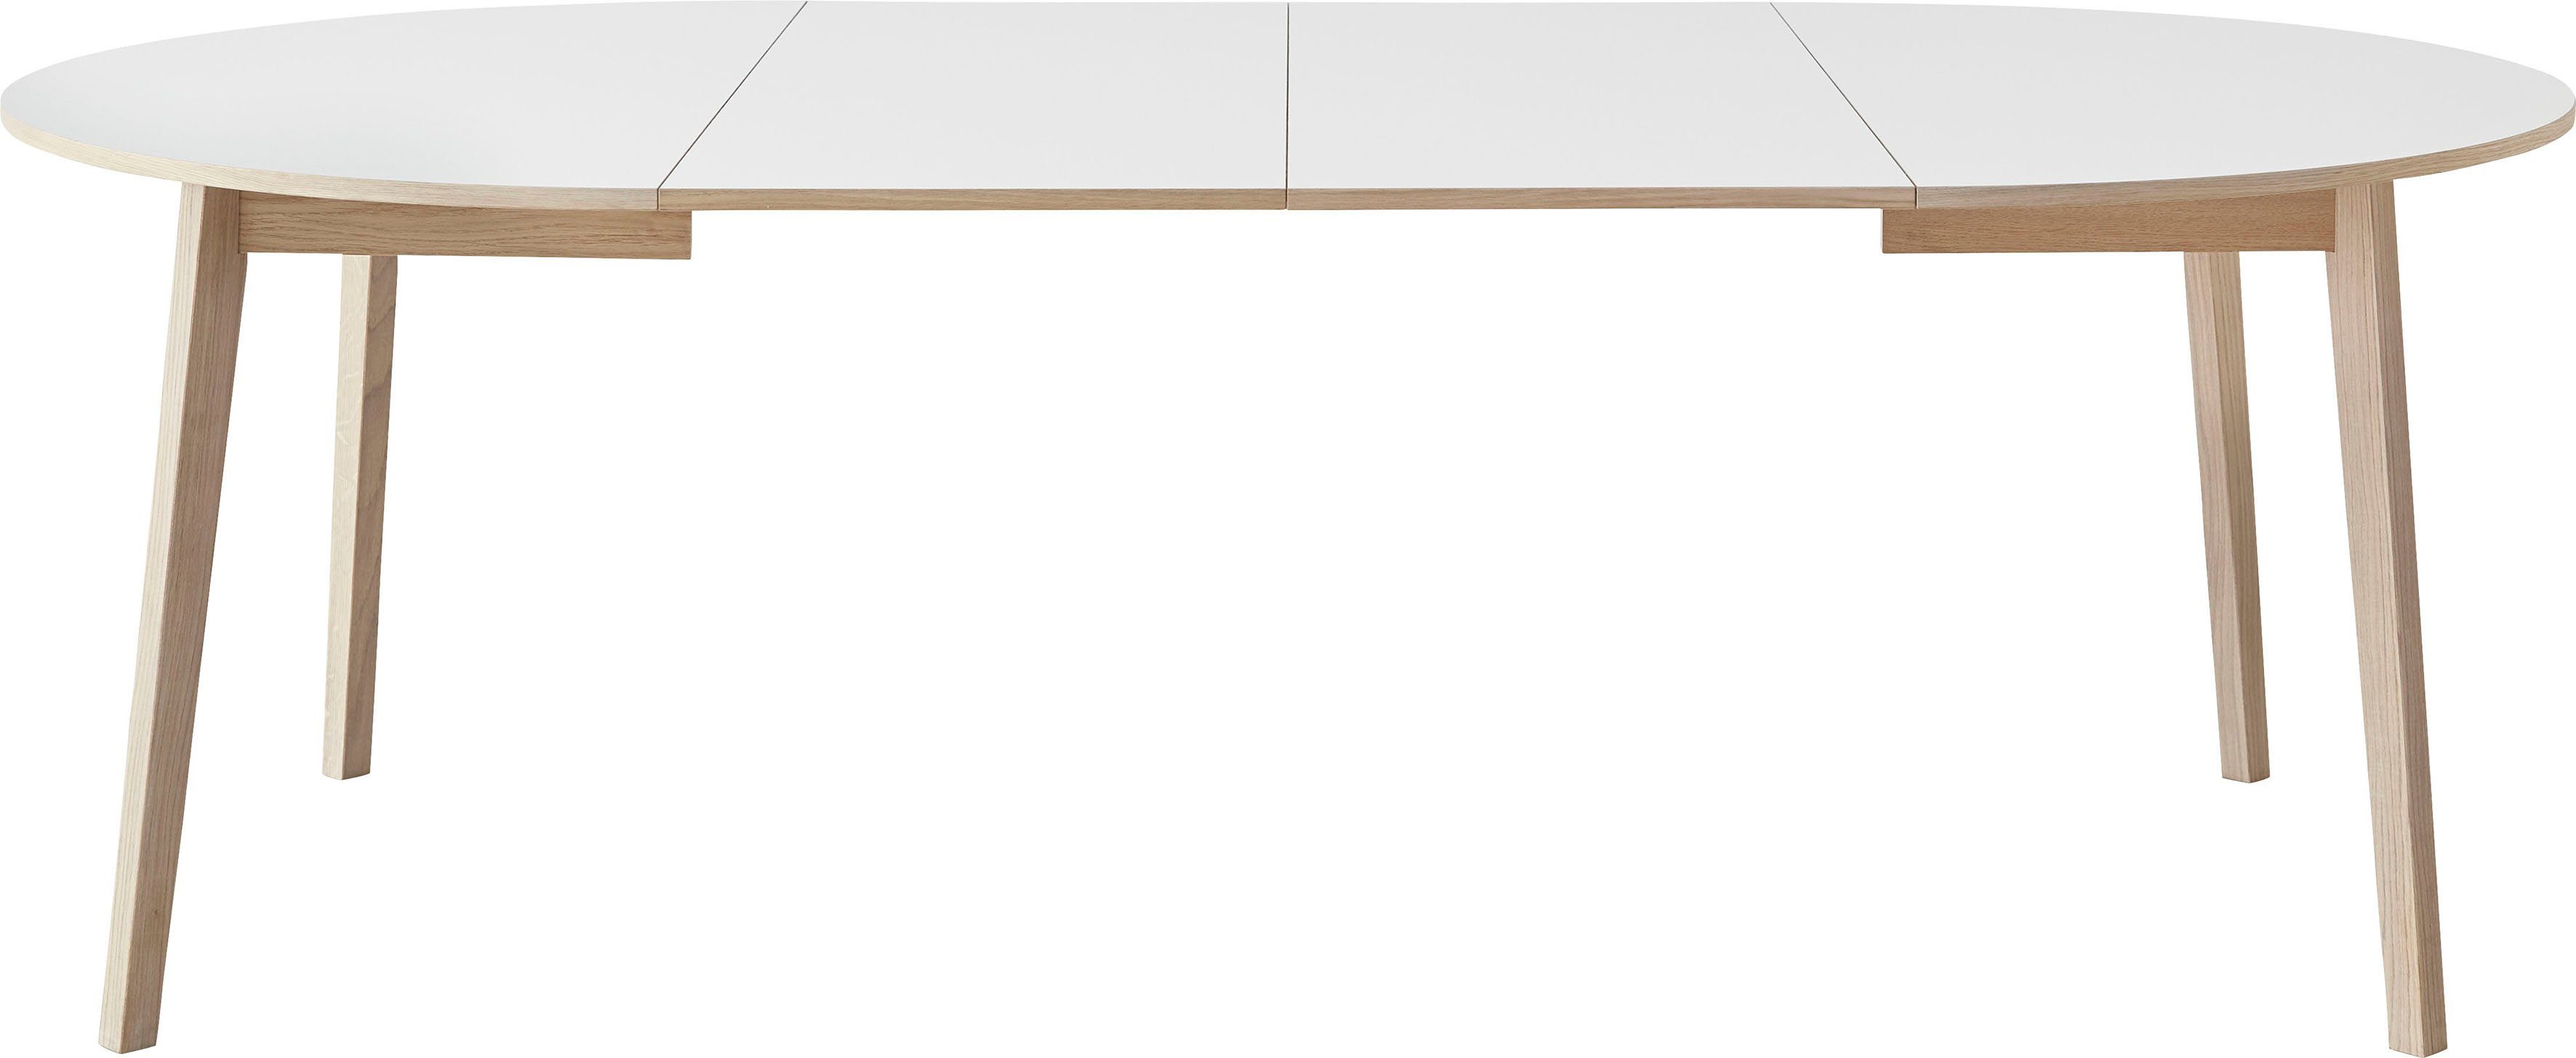 Hammel Furniture Esstisch inklusive Gestell cm, Basic Single, aus Hammel Ø130/228 Massivholz, by Weiß/Naturfarben 2 Einlegeplatten